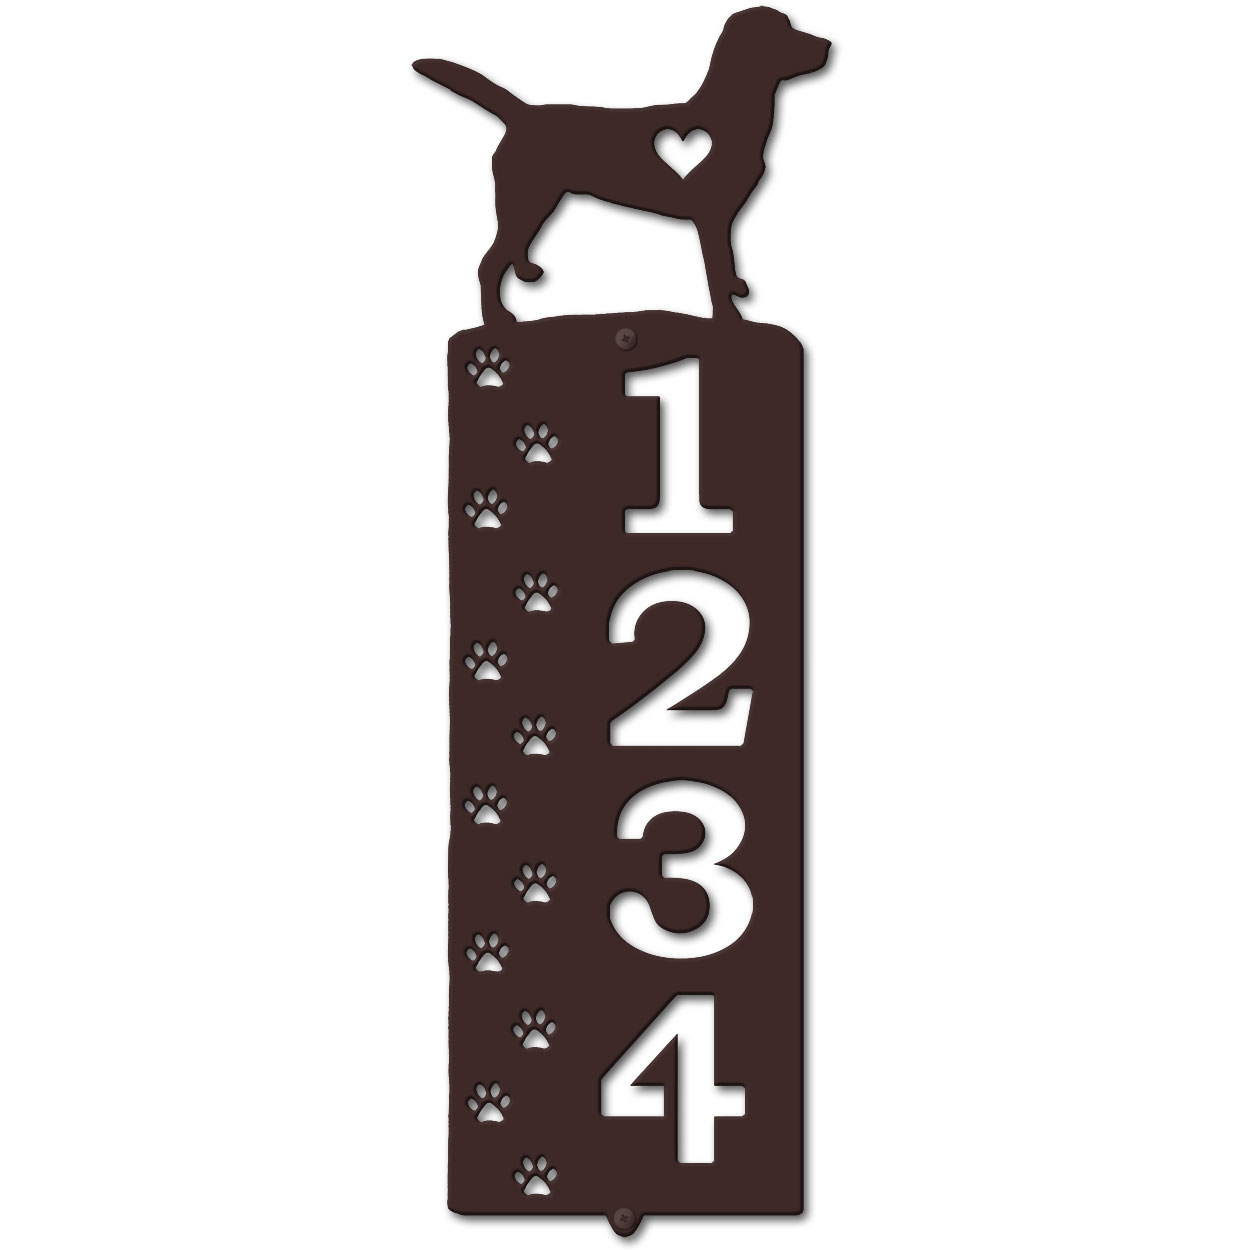 636264 - Labrador Cut Outs Four Digit Address Number Plaque